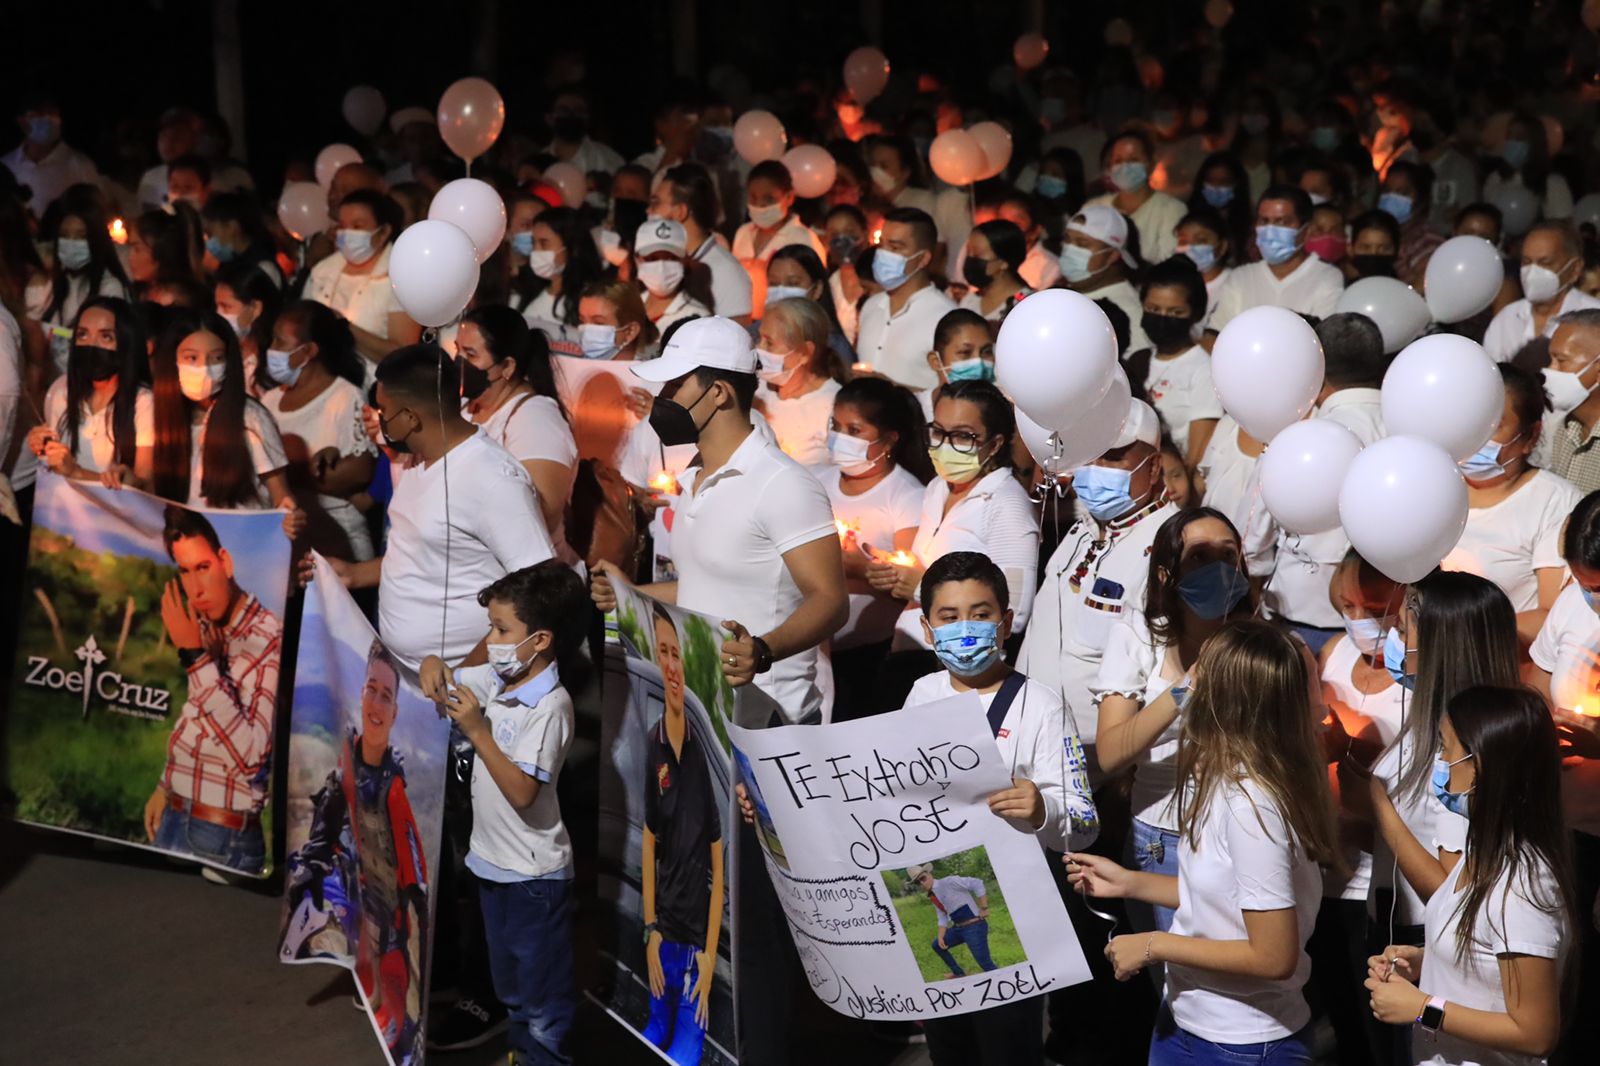 Familiares y amigos del cantante José Zoel Cruz de León participaron en una caminata para exigir su liberación. (Foto Prensa Libre: Élmer Vargas)